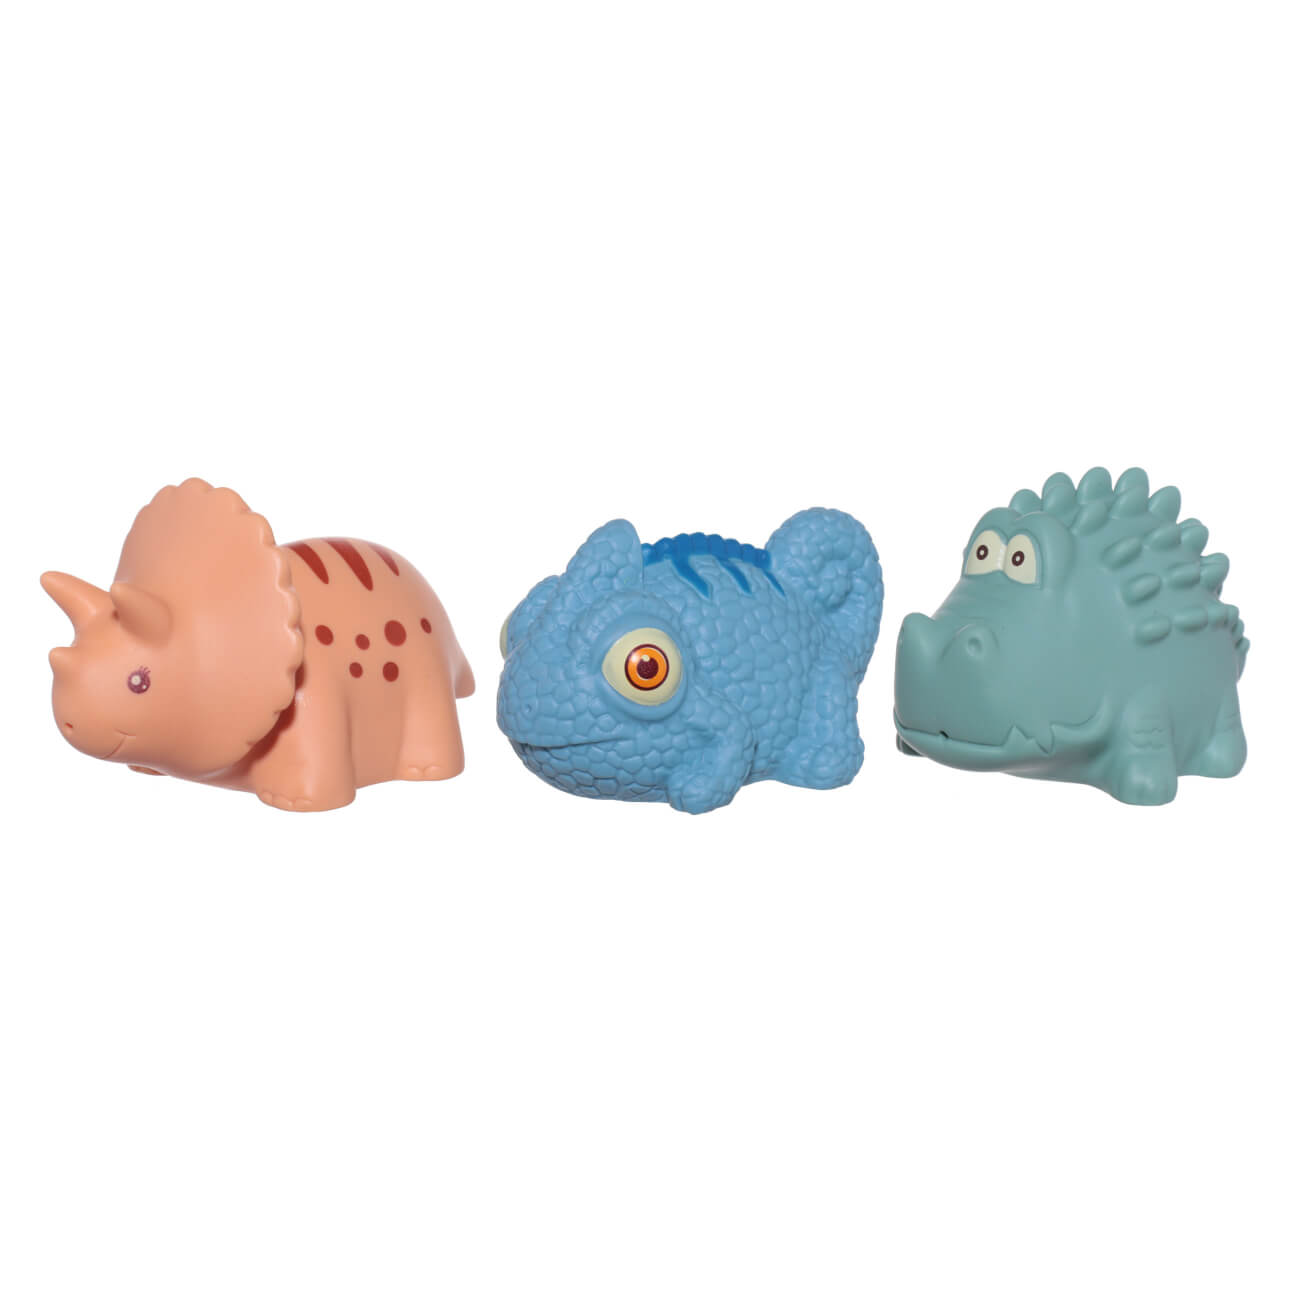 Набор игрушек для купания, 3 пр, ПВХ, цветной, Хамелеон/Динозавр/Крокодил, Kiddy набор пальчиковых игрушек